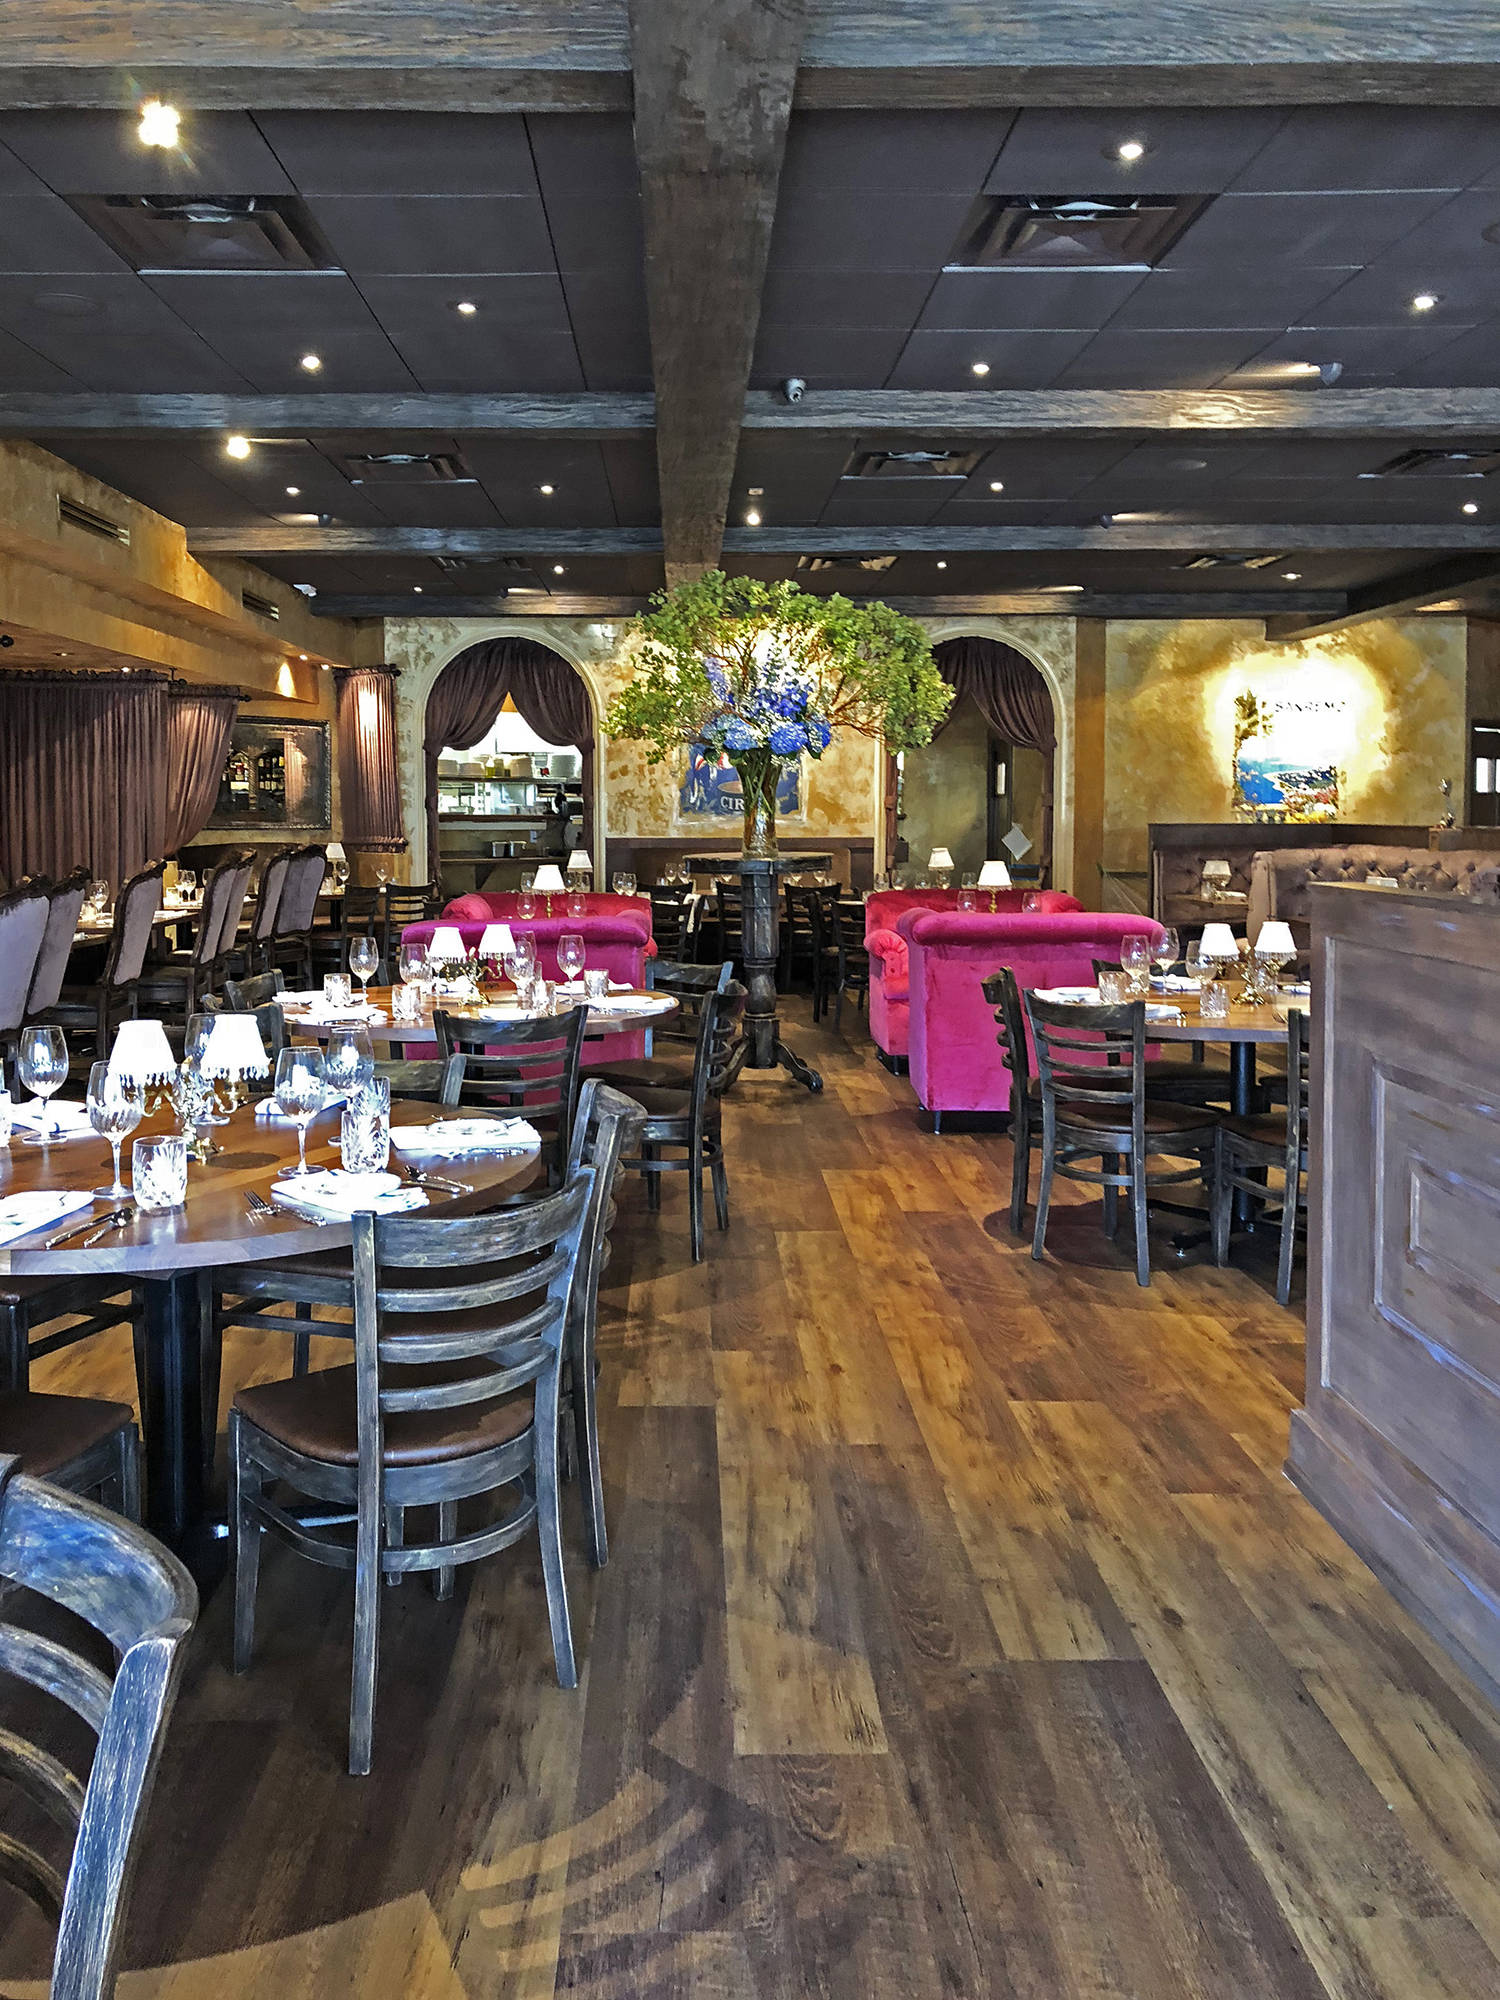 Restaurant interior with velvet oversized chair